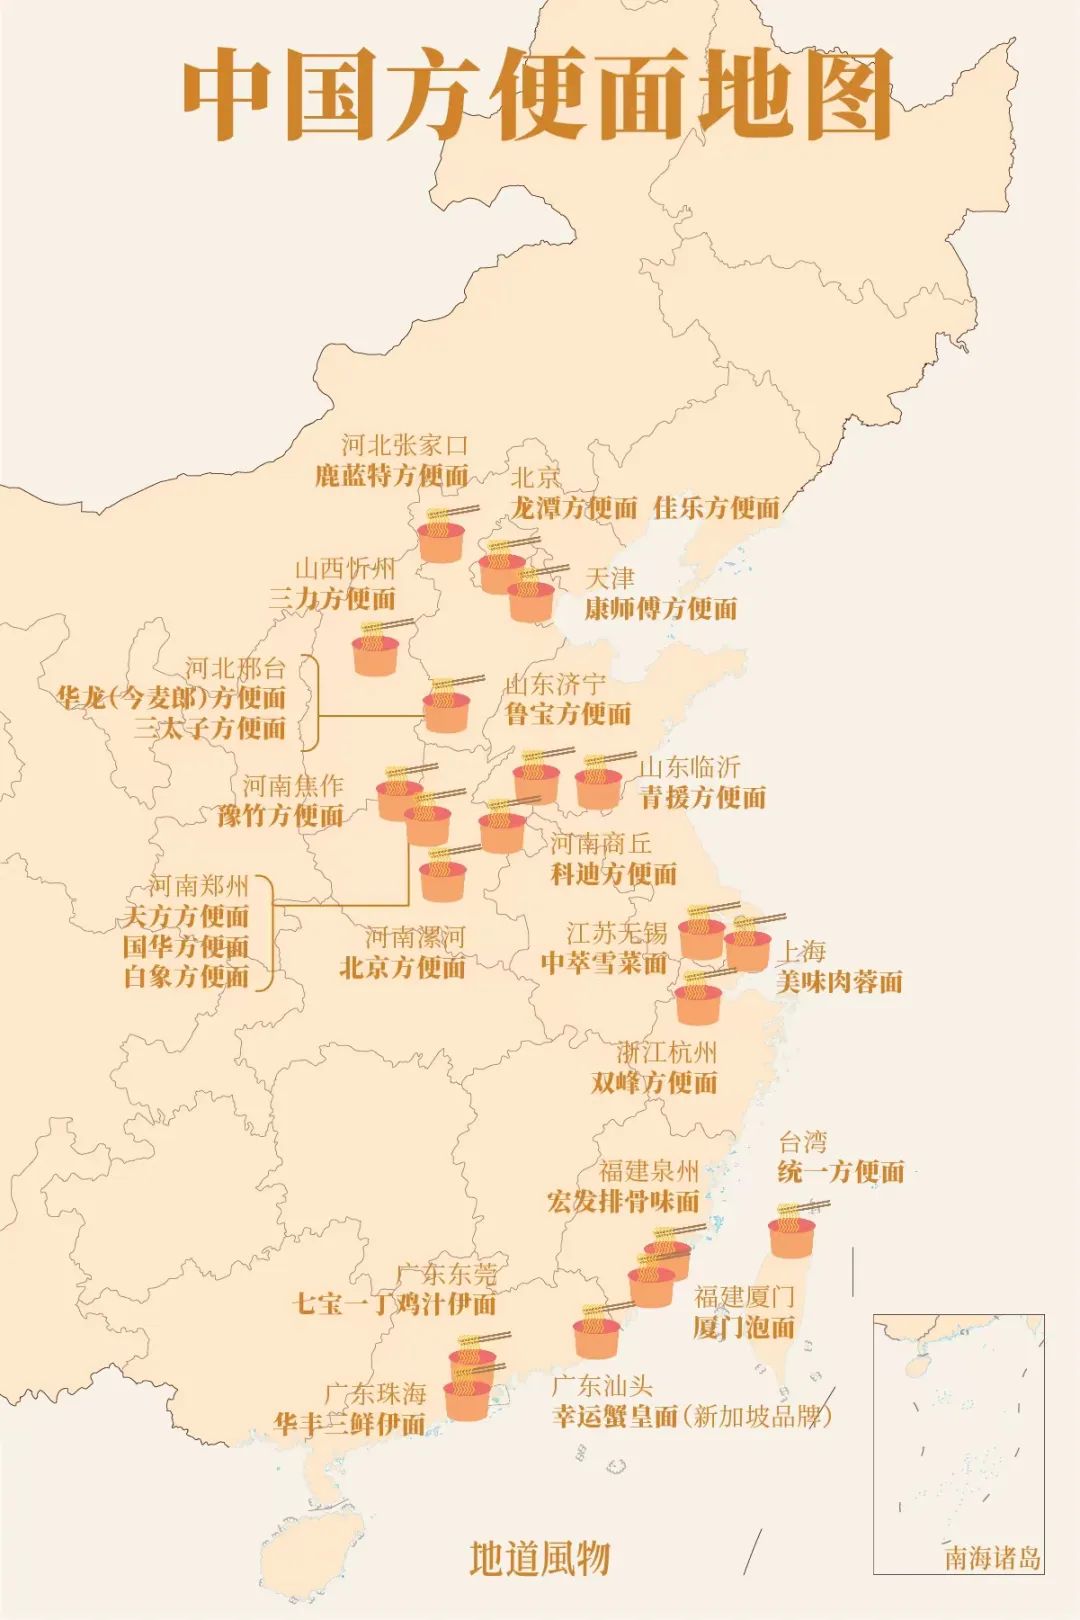 中国方便面江湖，聚集在华北、中原、东南沿海